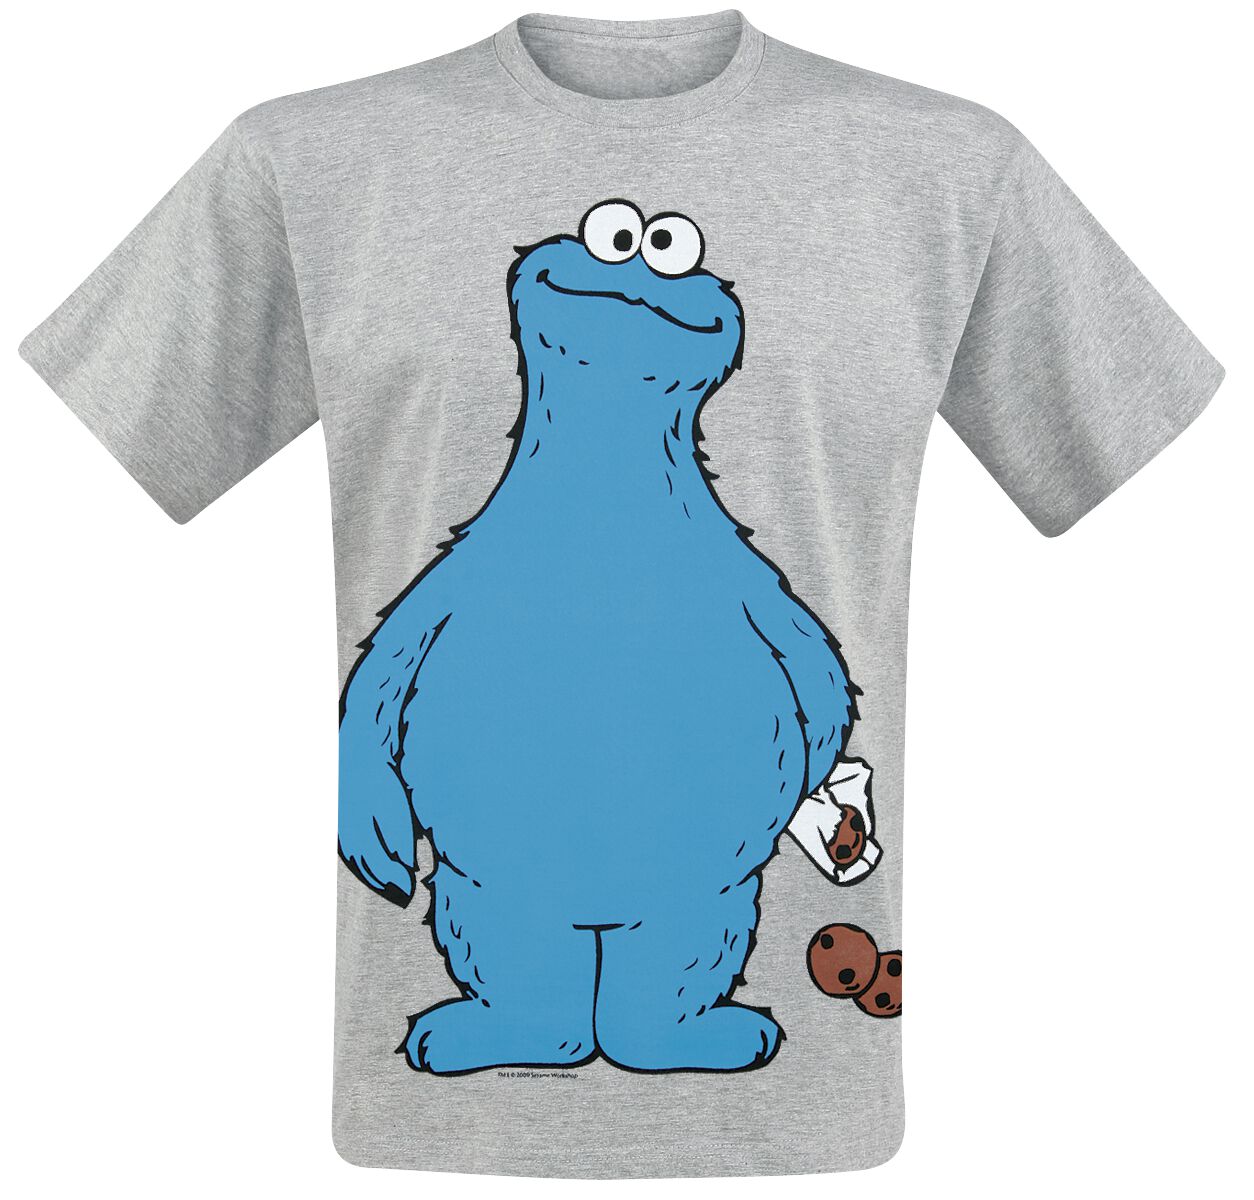 Sesamstraße T-Shirt - Krümelmonster - Cookie Thief - S bis 4XL - für Männer - Größe S - grau meliert  - Lizenzierter Fan